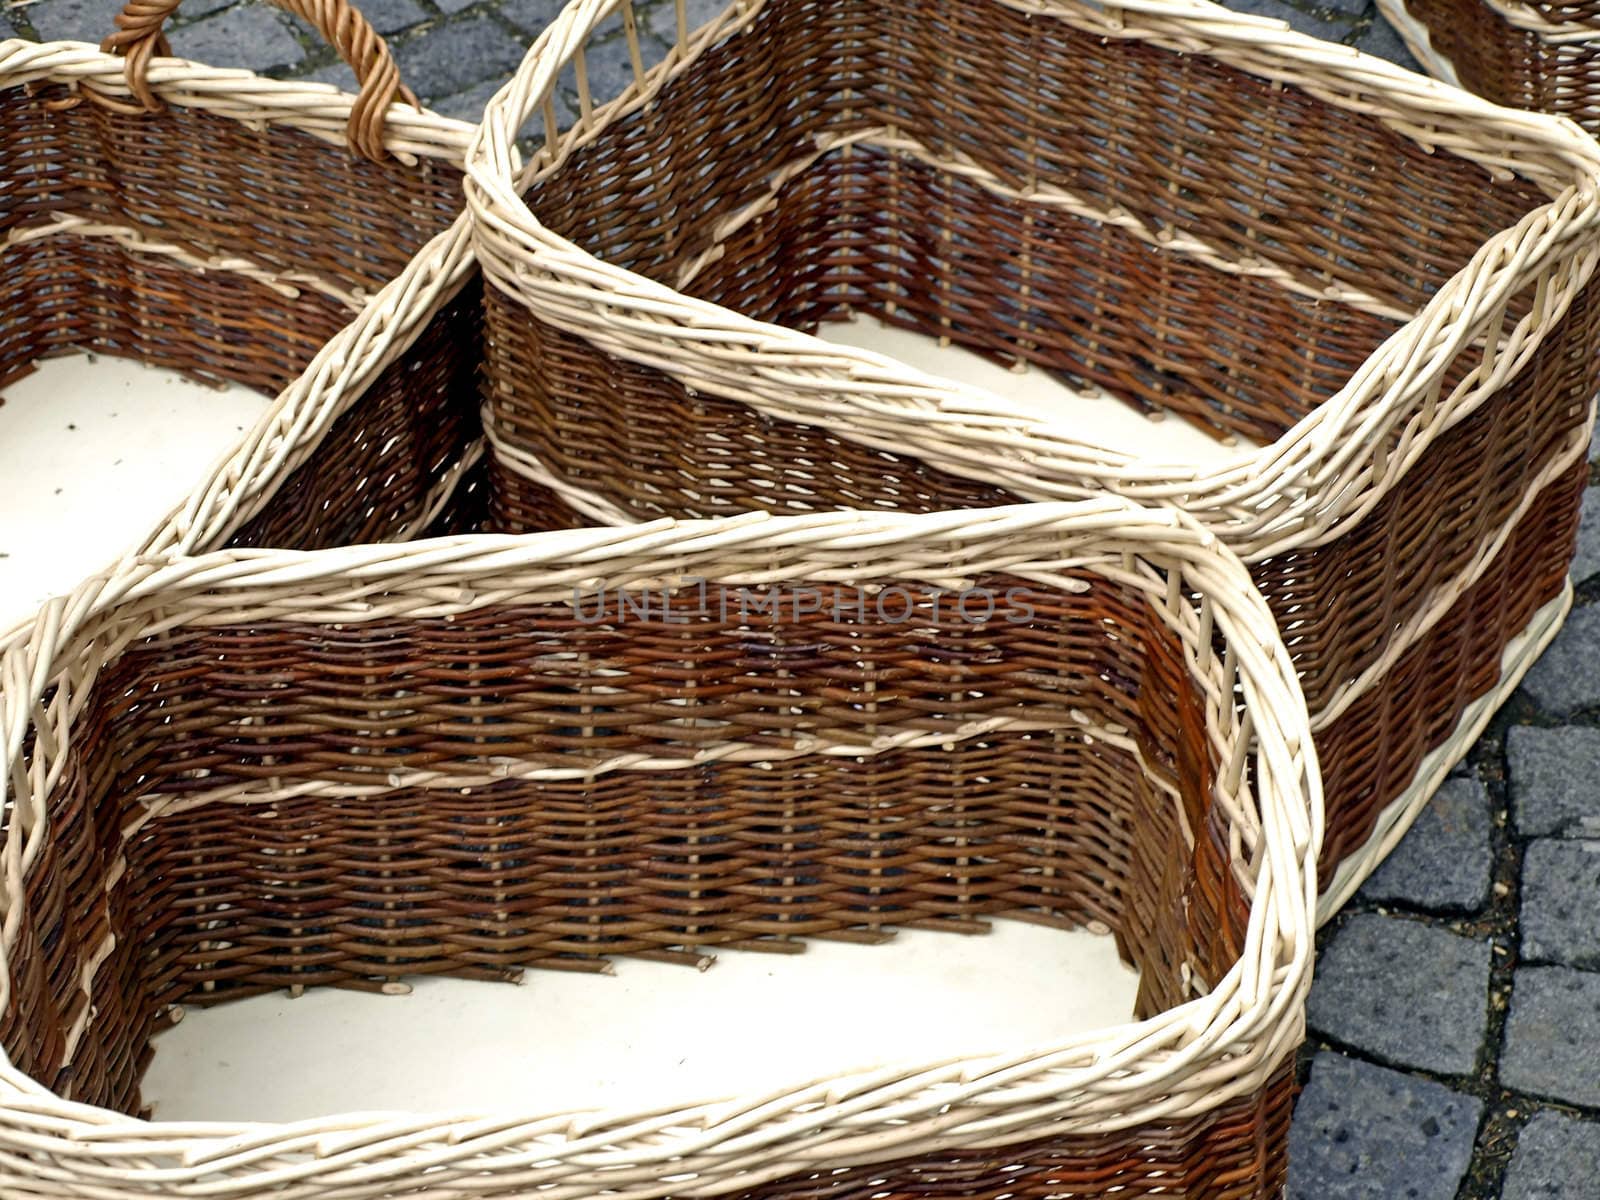 willow baskets by Jochen